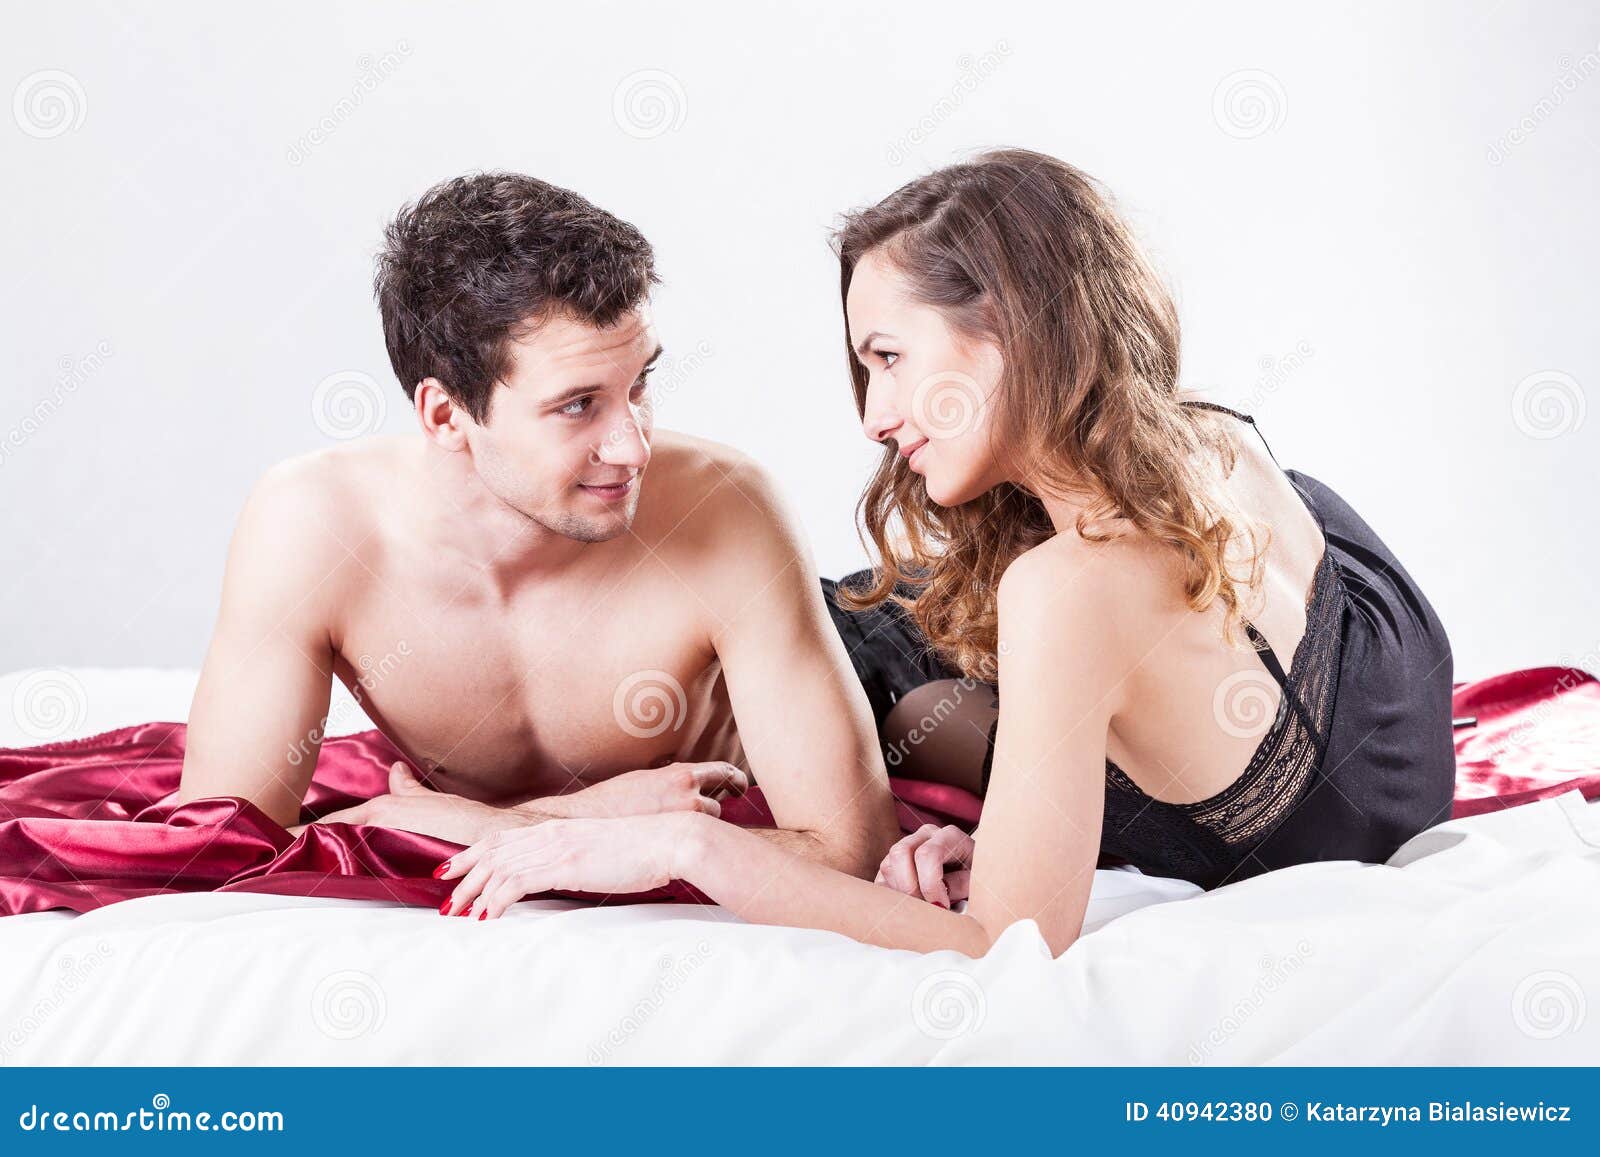 Короткие измены жен. Женская неверность. Женская измена. Мужчина и женщина в постели. Женская измена картинки.